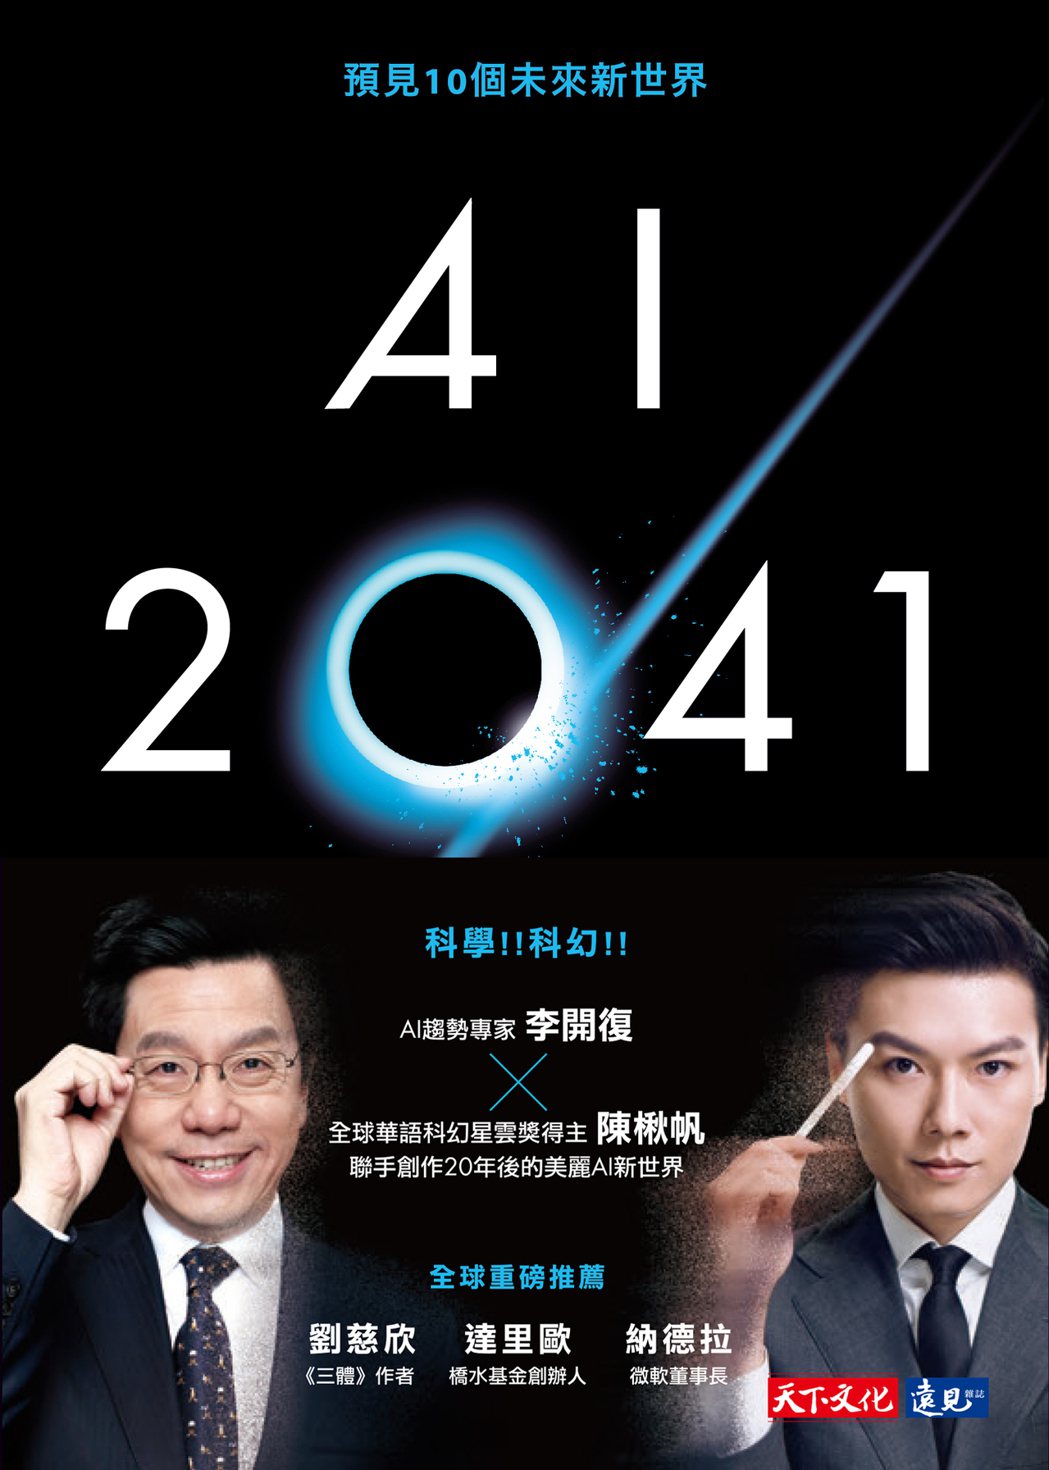 書名：《AI 2041：預見10個未來新世界》
作者：李開復、陳楸帆
出版社：天下文化
出版時間：2021年7月2日